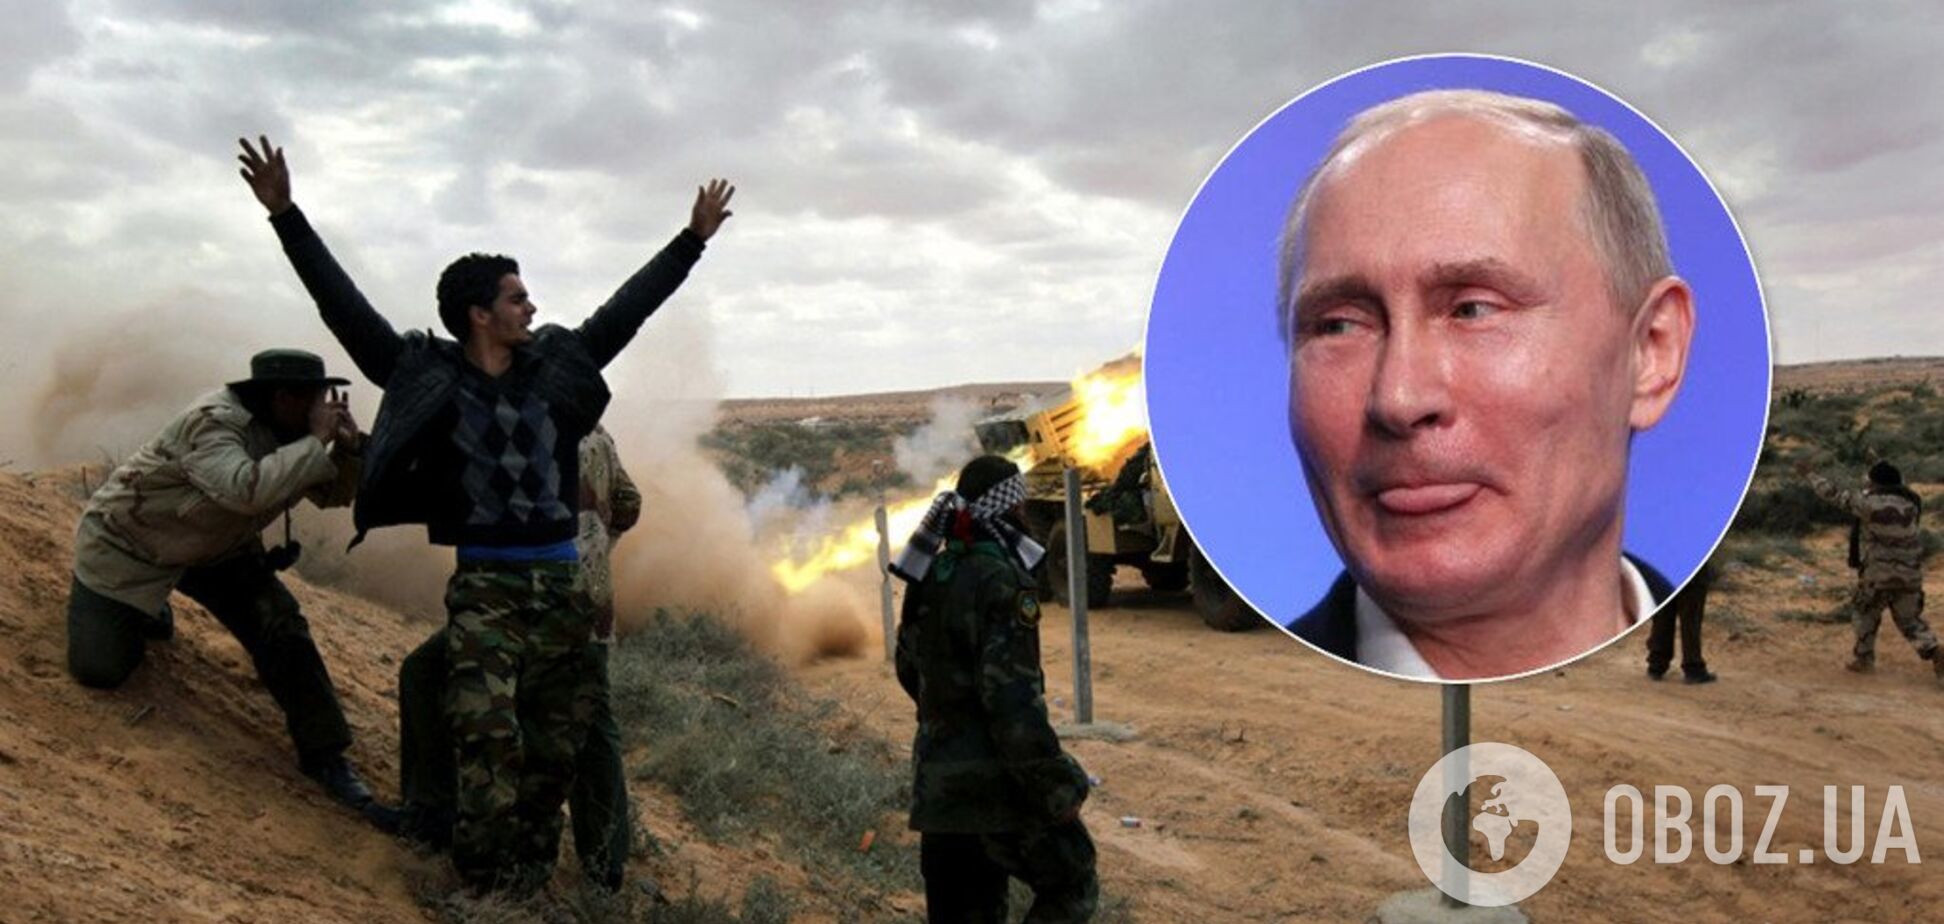 Путин, введи войска! В Ливии обратились к России за помощью